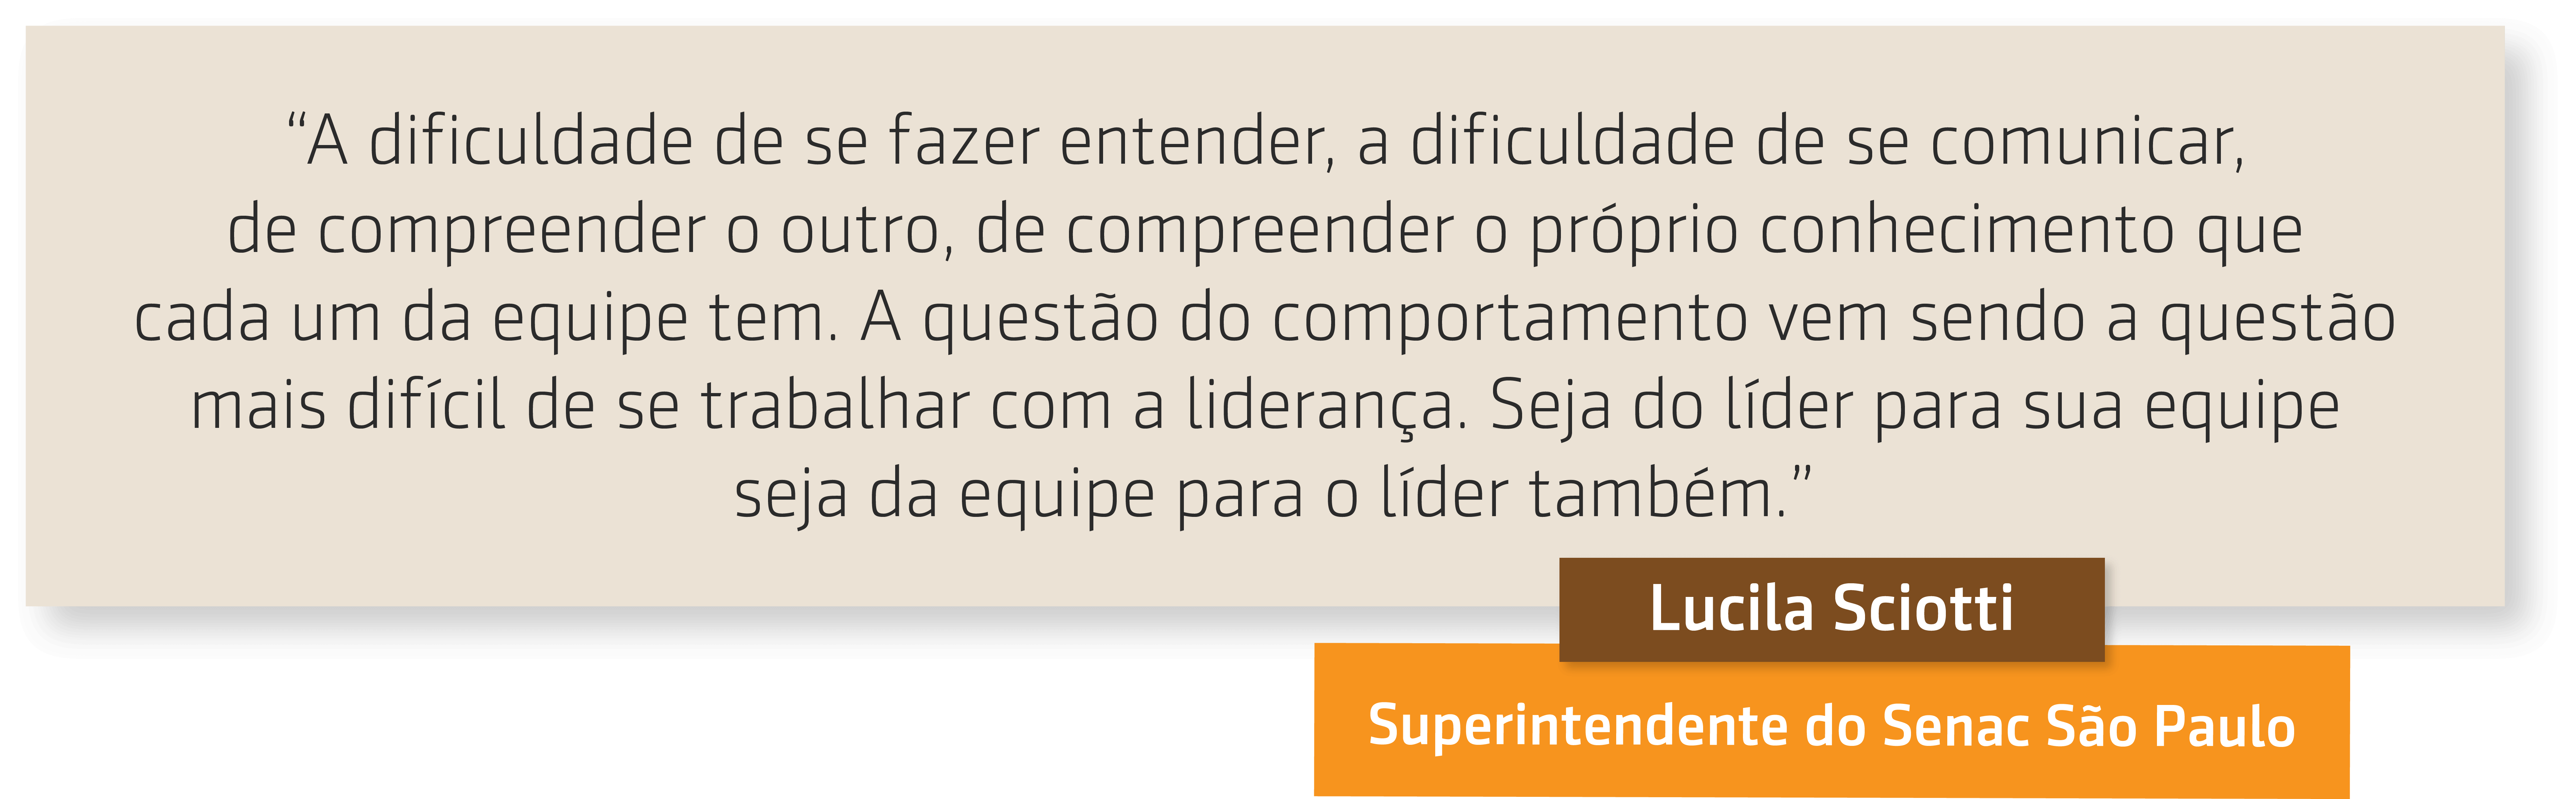 Lucila do Senac São Paulo fala sobre Dificuldades e soluções no desenvolvimento da liderança 